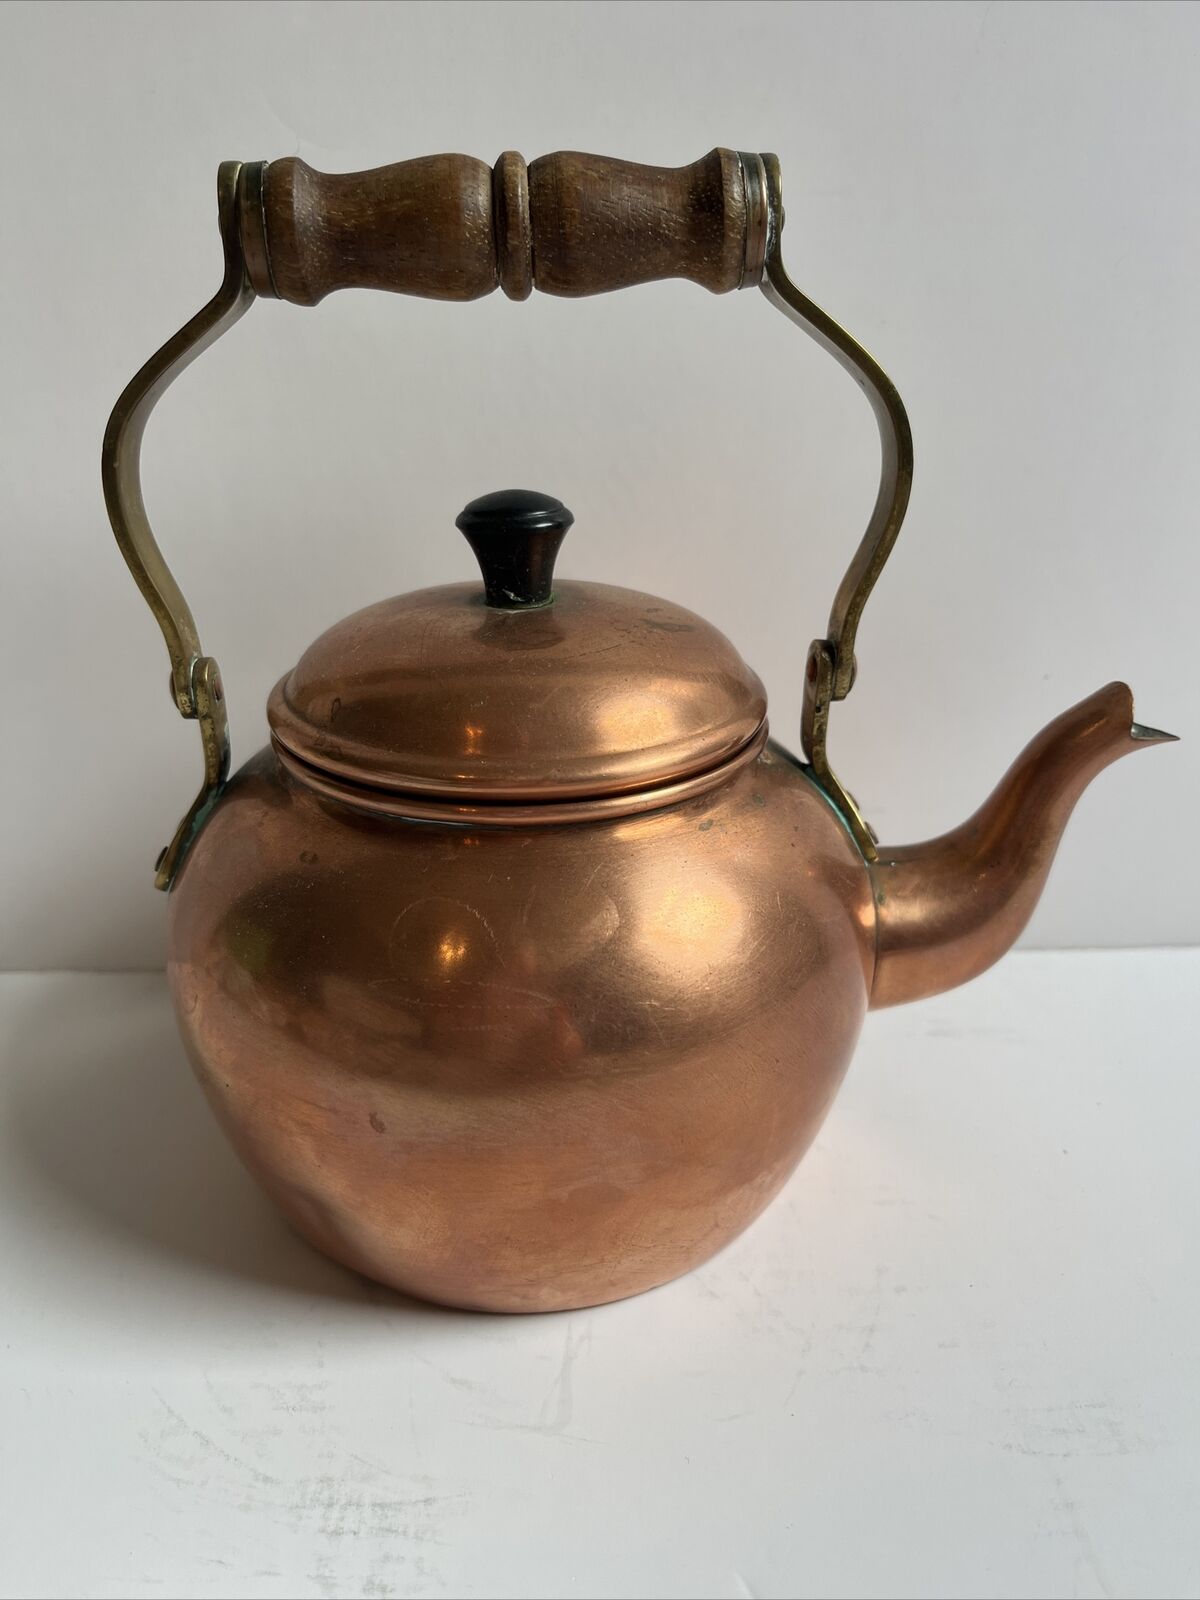 Vintage Copper Tea Kettle Wood Handle and Knob on Lid